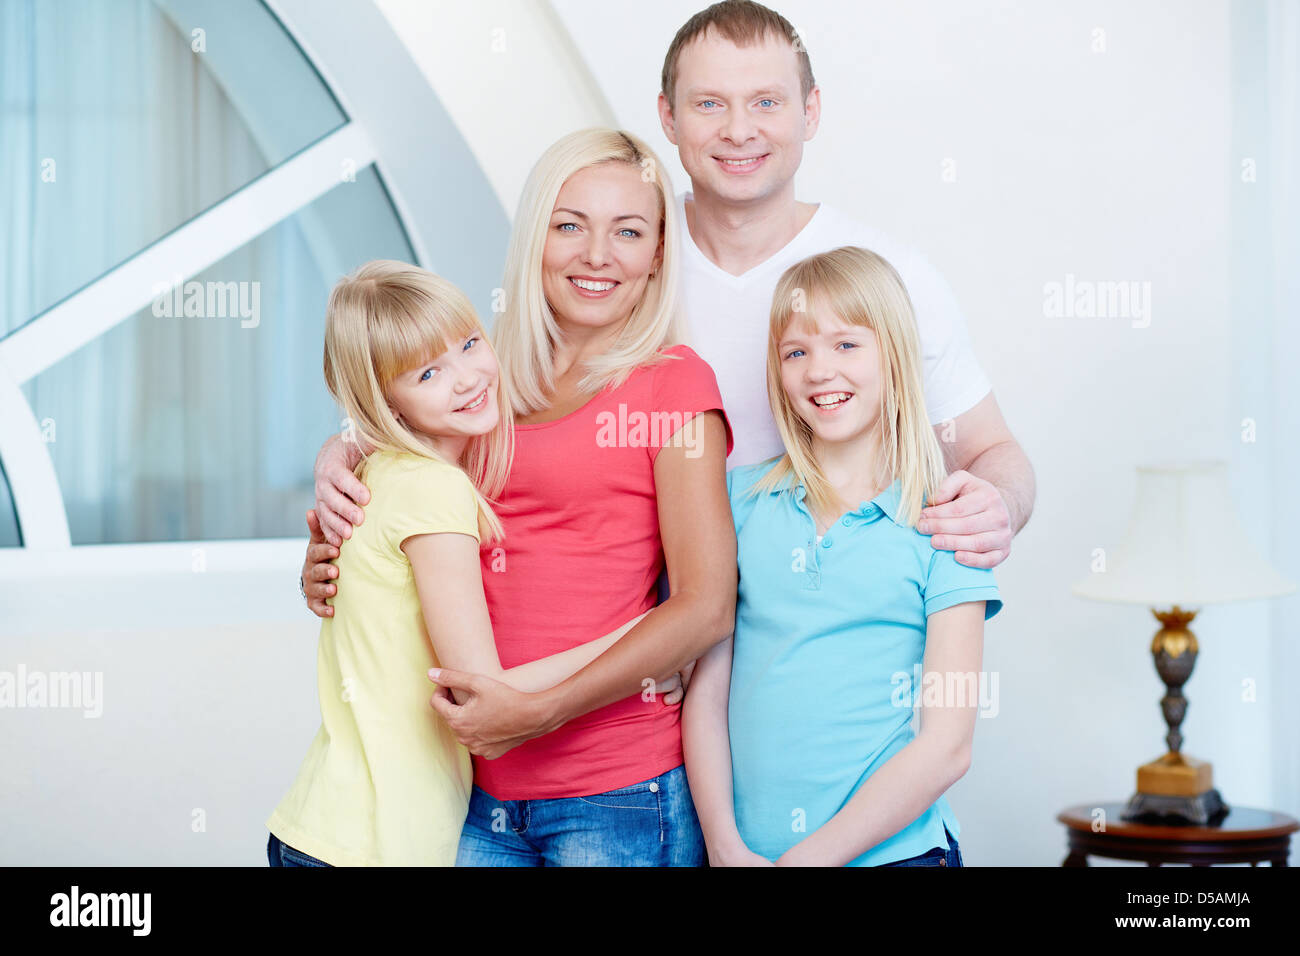 Ritratto di una famiglia perfetta con atteggiamento positivo Foto Stock